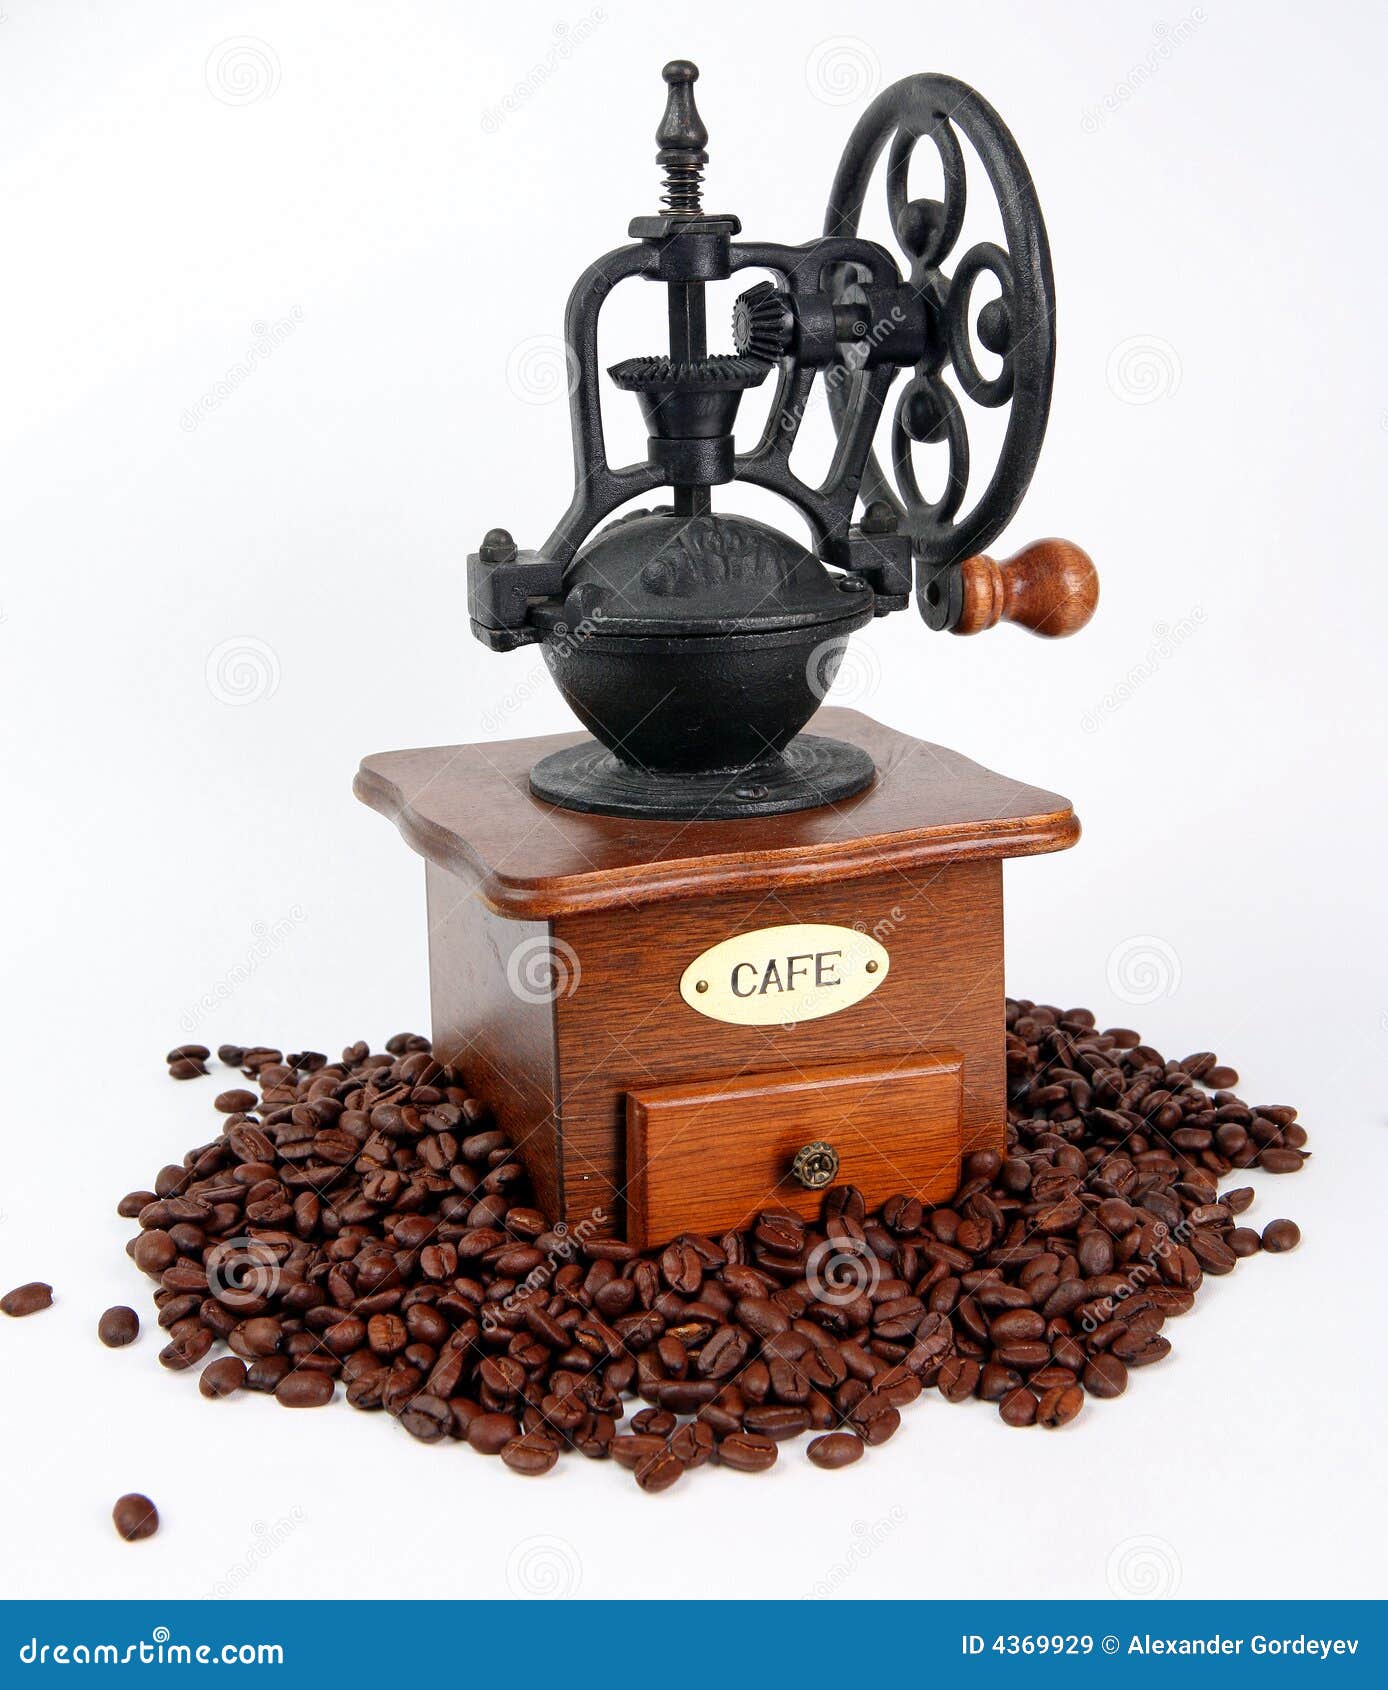 coffee-grinder-coffee-bins-4369929.jpg